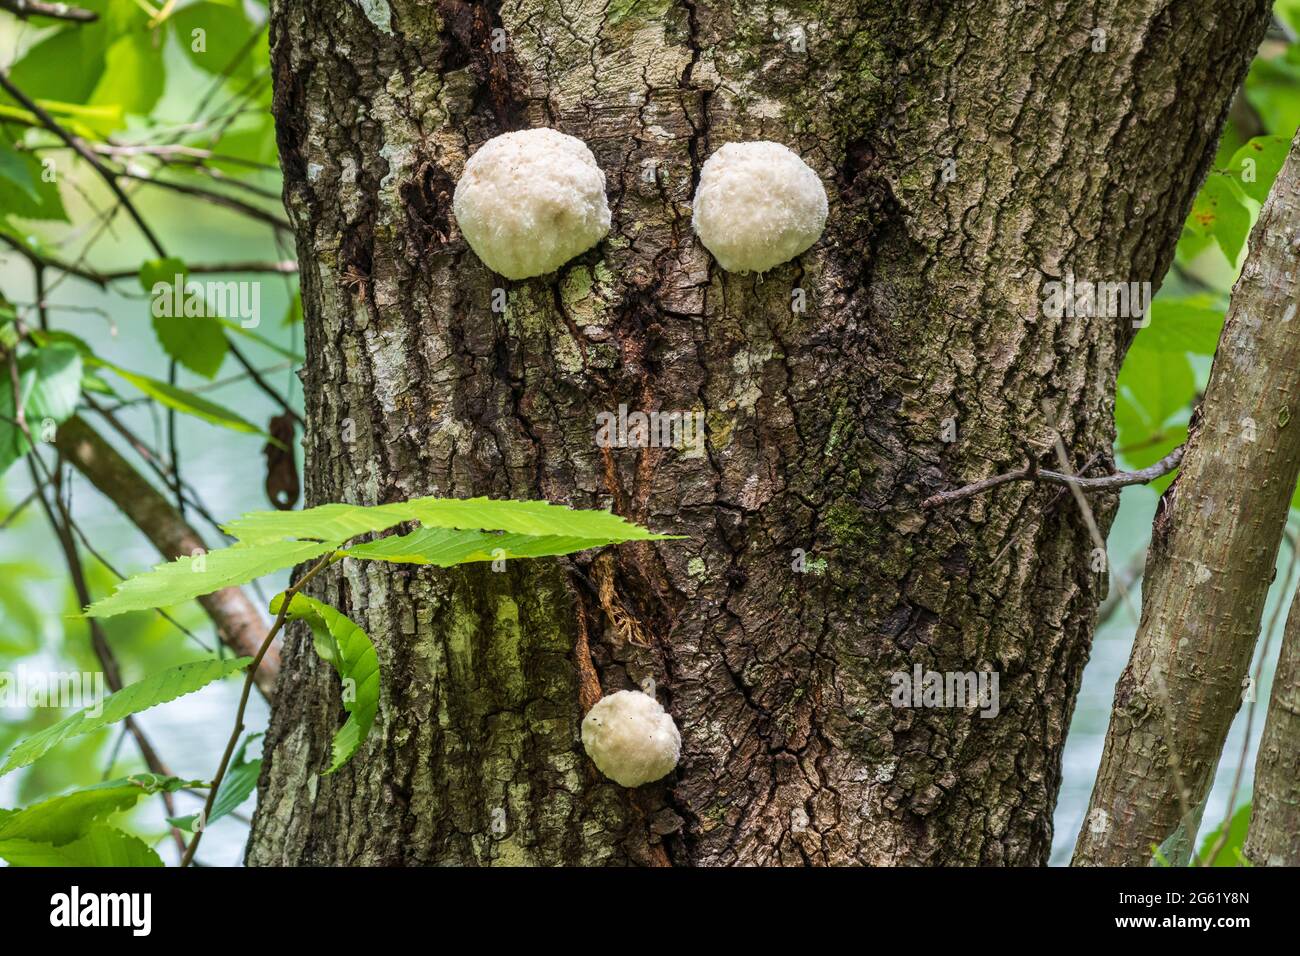 Weißer Kugelpilz, der auf dem Stamm einer lebenden südlichen Eiche wächst - Homosassa, Florida, USA Stockfoto